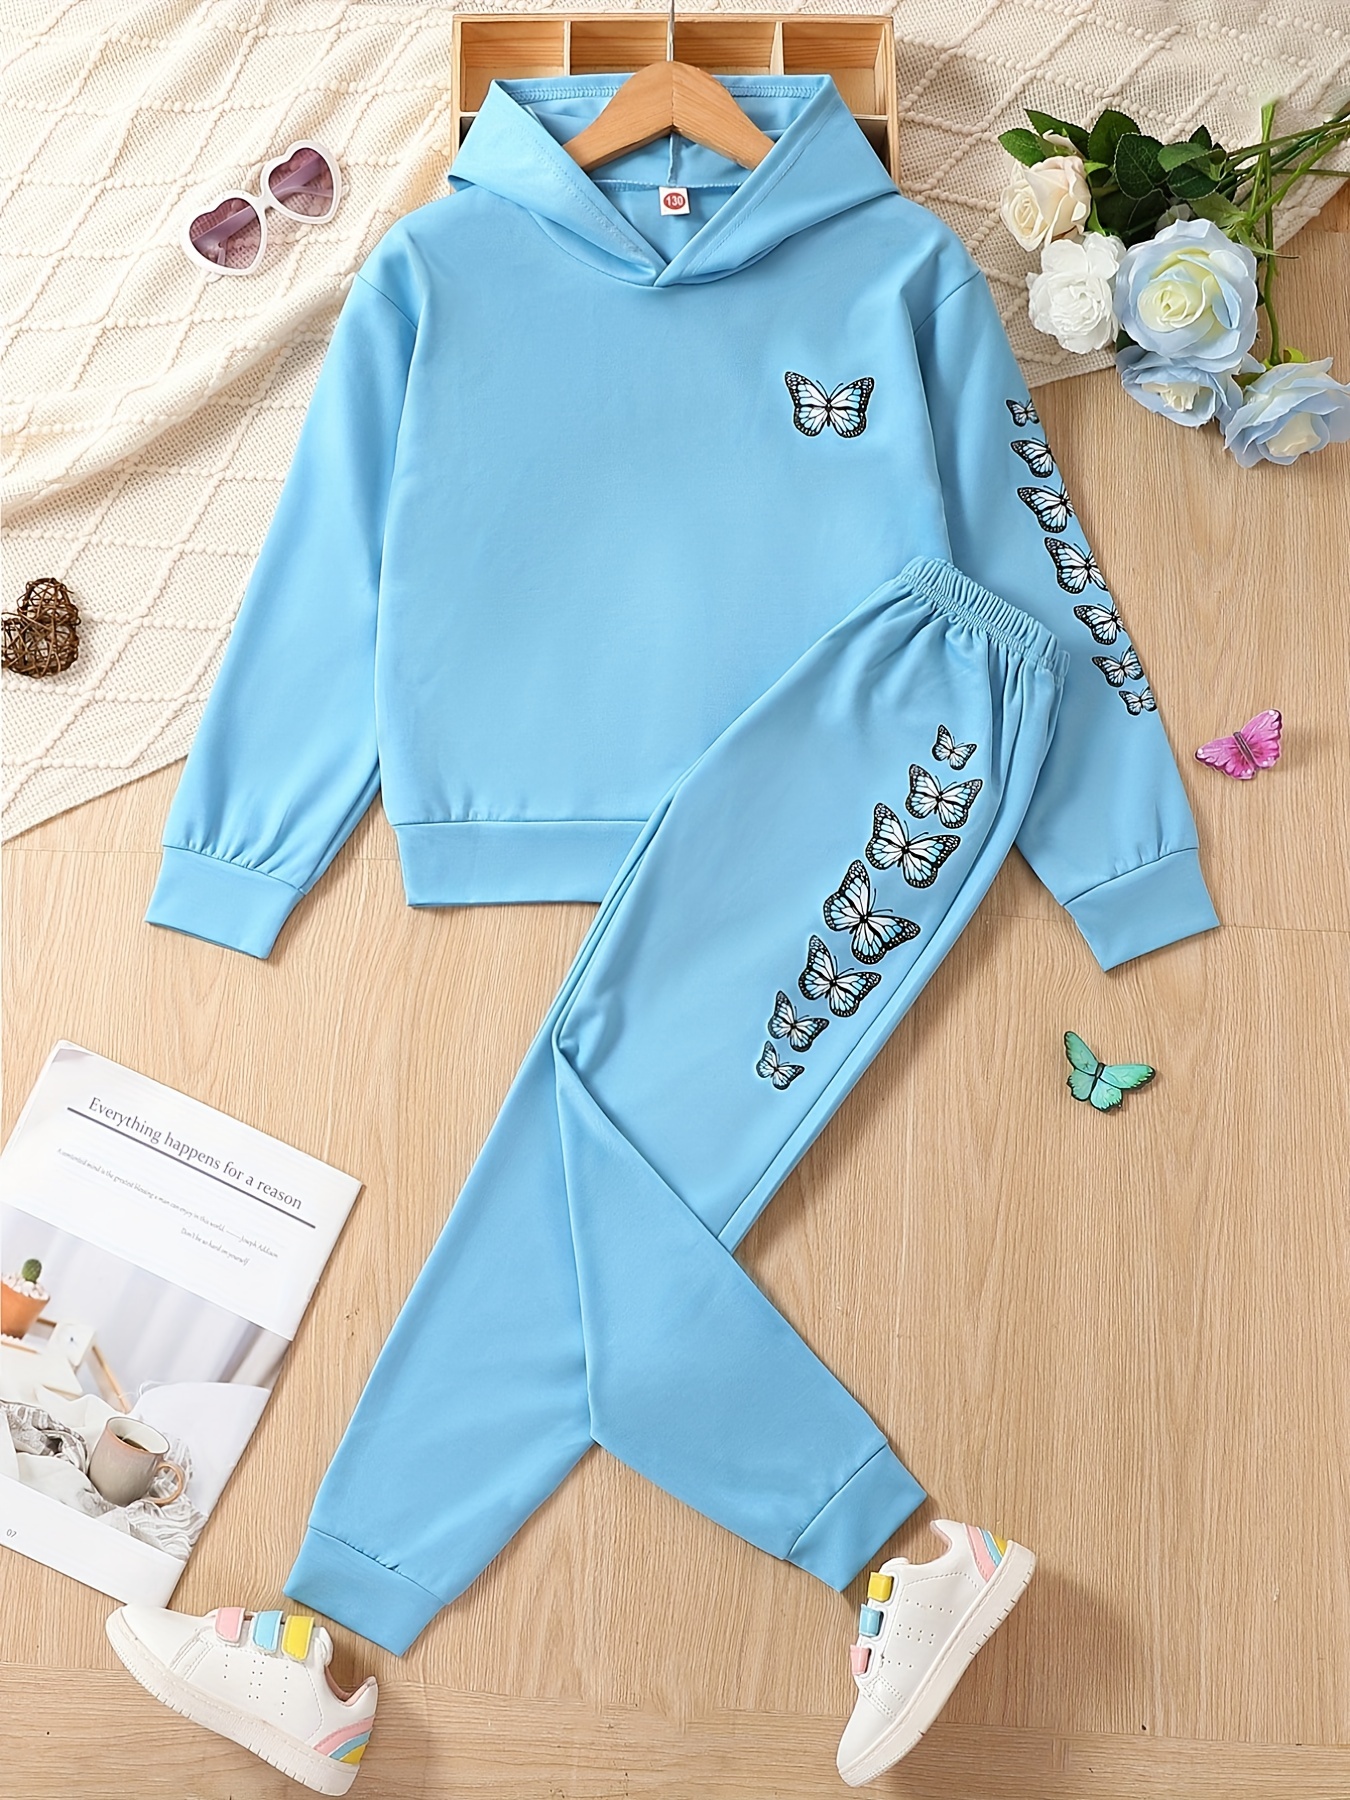 Bluey Girls Fleece Sweatshirt and Jogger Pants Set Toddler